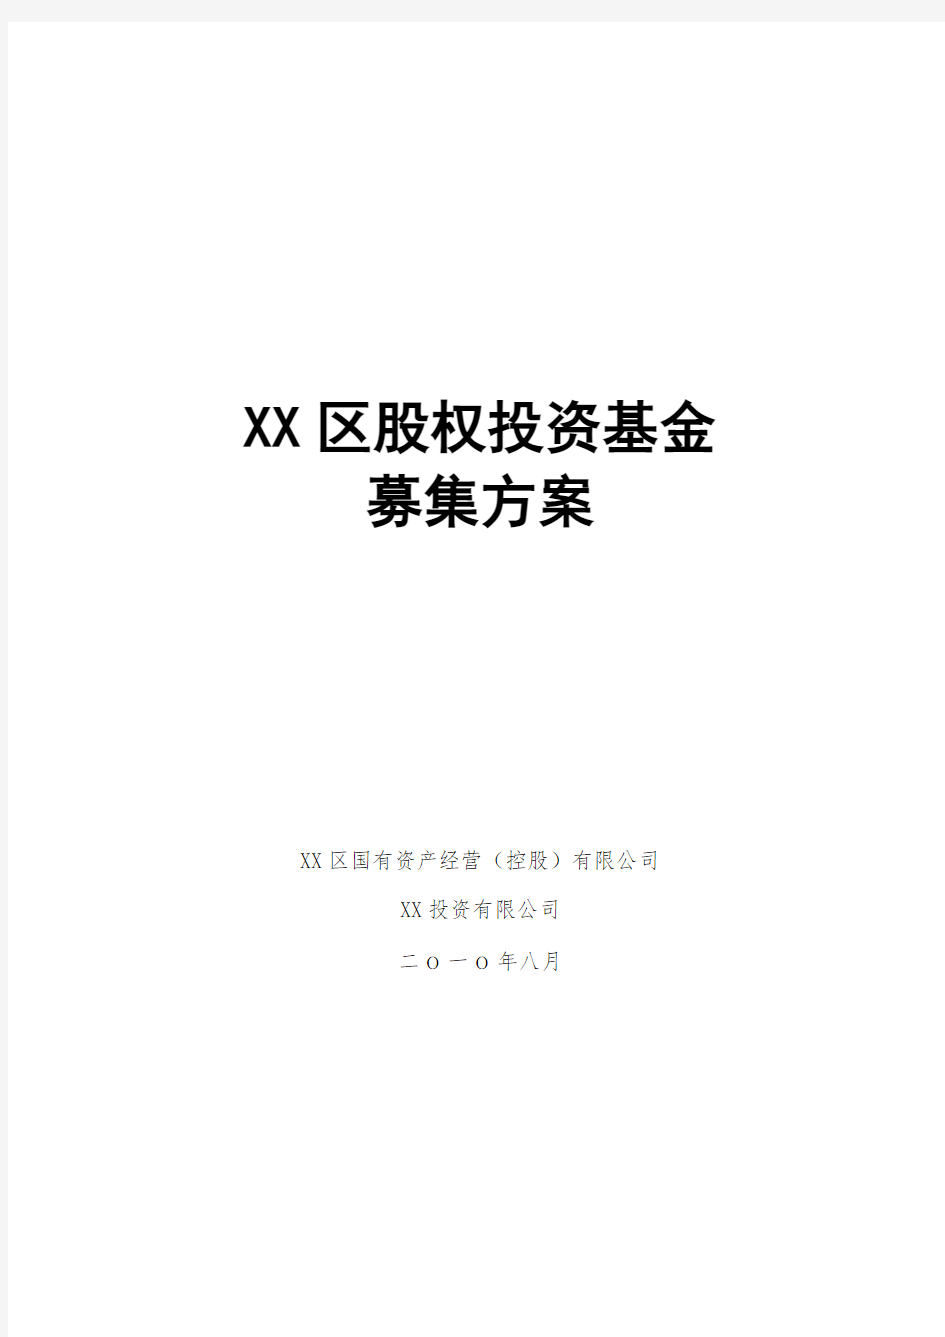 XX股权投资基金募集方案-精选.doc